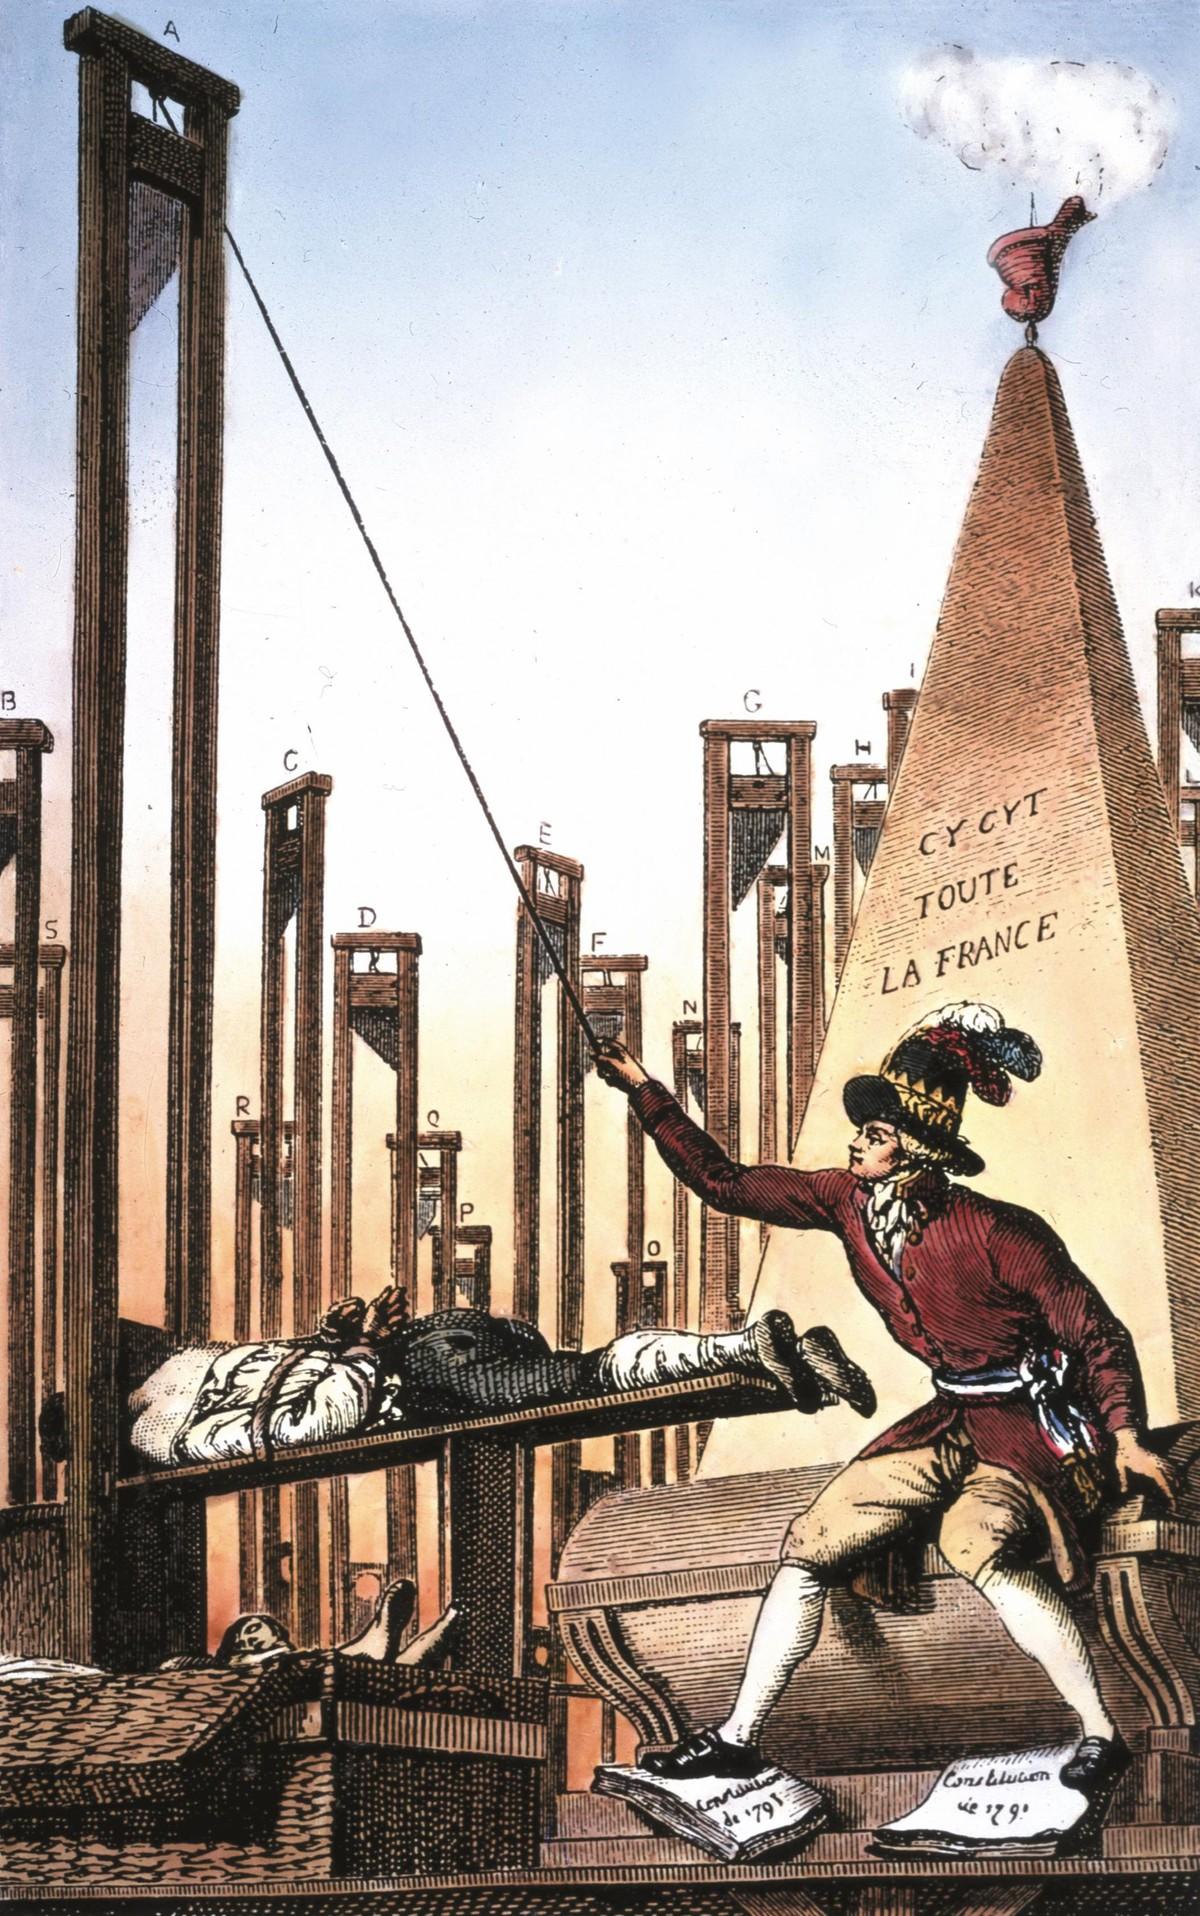 Caricature « Robespierre guillotinant le bourreau lui-même, après avoir fait guillotiner toute la France », 1793 (musée Carnavalet, Paris).